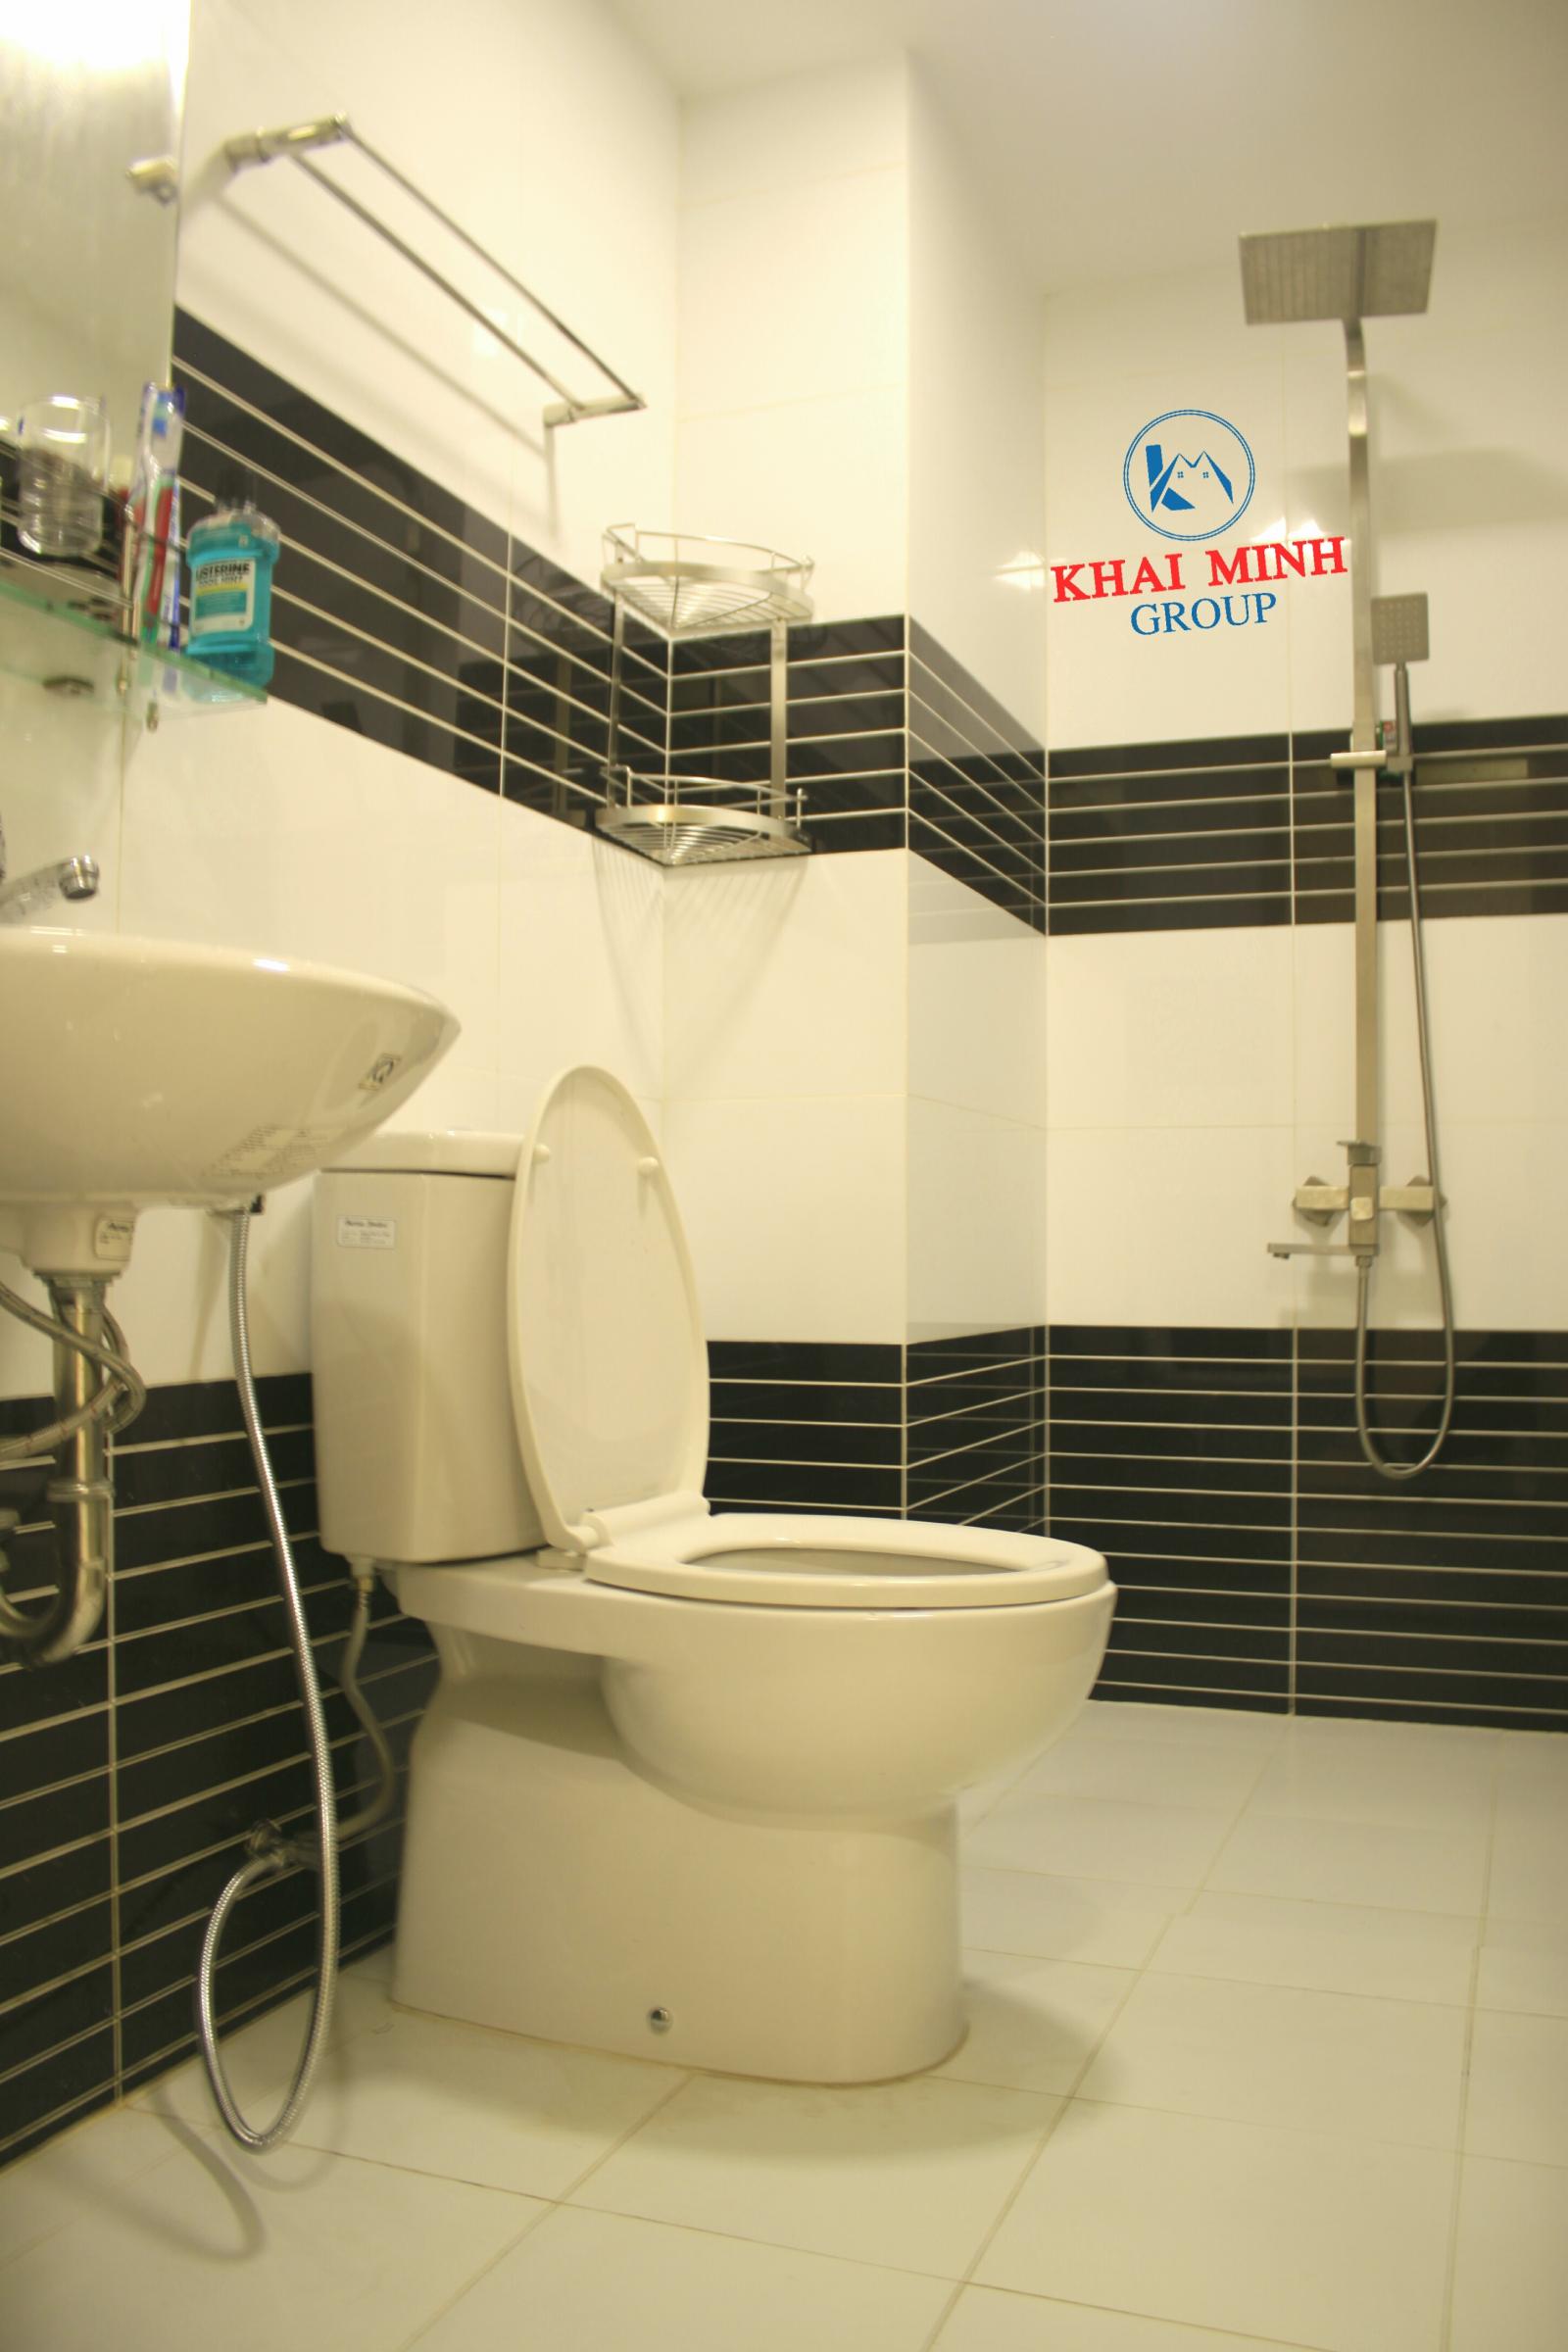 Phòng GIÁ RẺ, CÓ KỆ BẾP, WC RIÊNG- Gần Võ Văn Kiệt, Aeon Mall Bình Tân